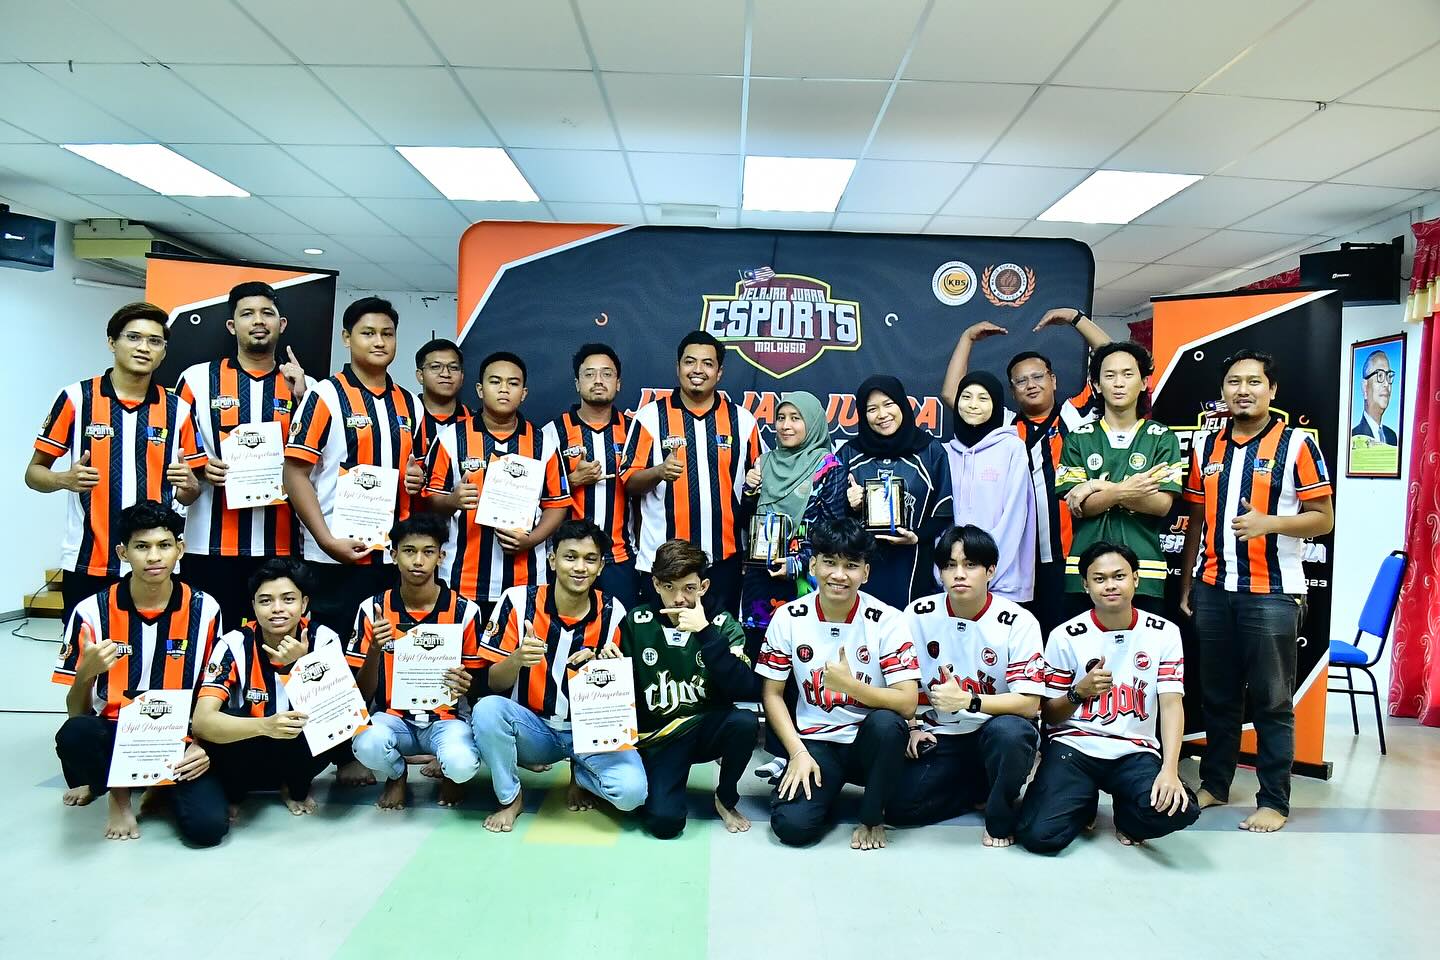 Program Jelajah Juara E-Sports Malaysia edisi Negeri Pulau Pinang